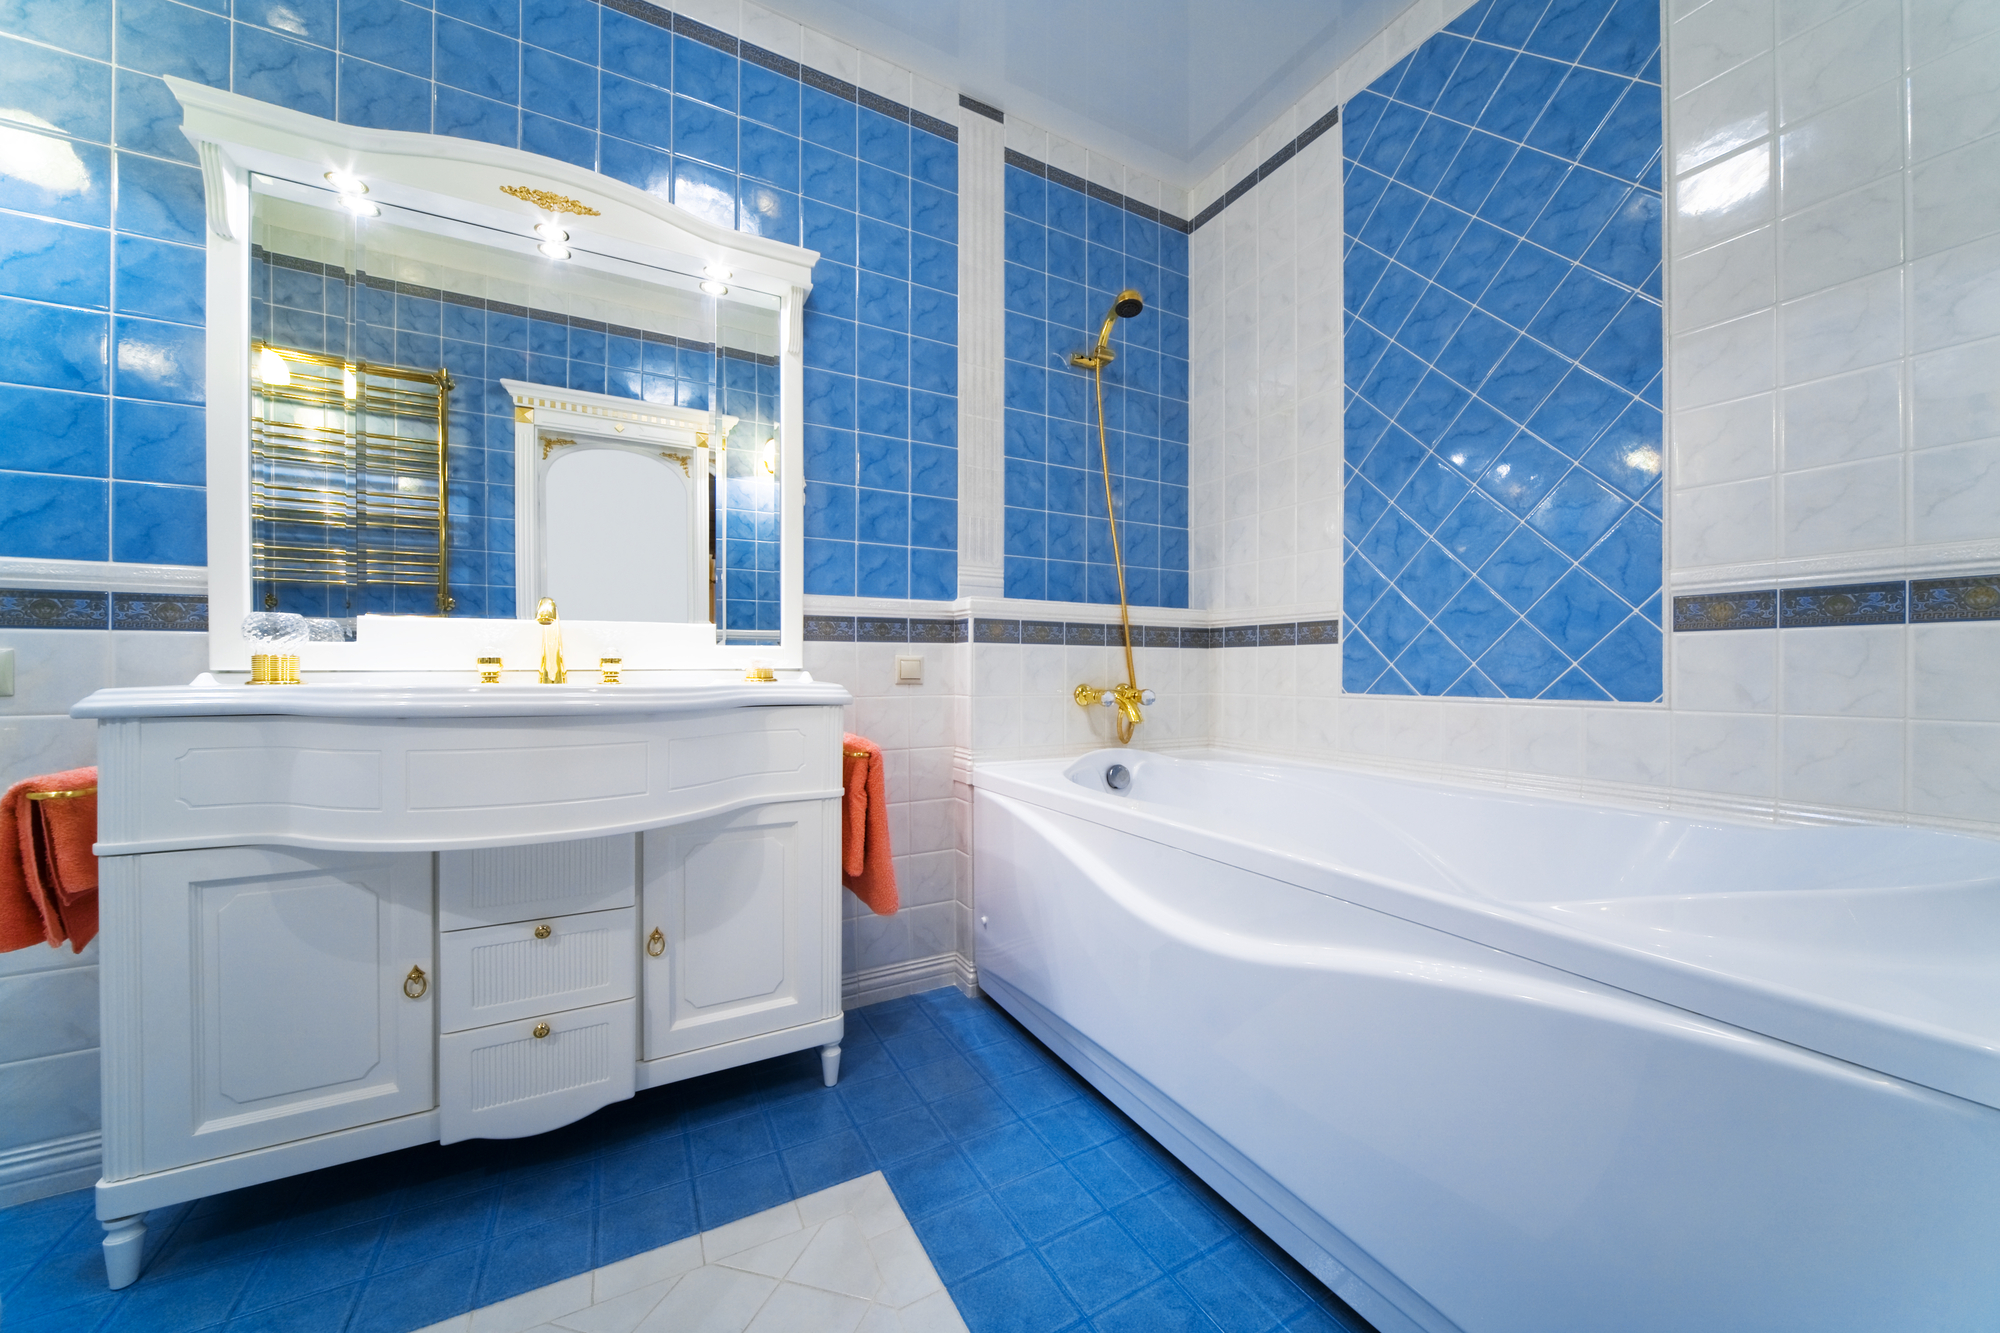 Best places to buy bathroom vanities in 2022